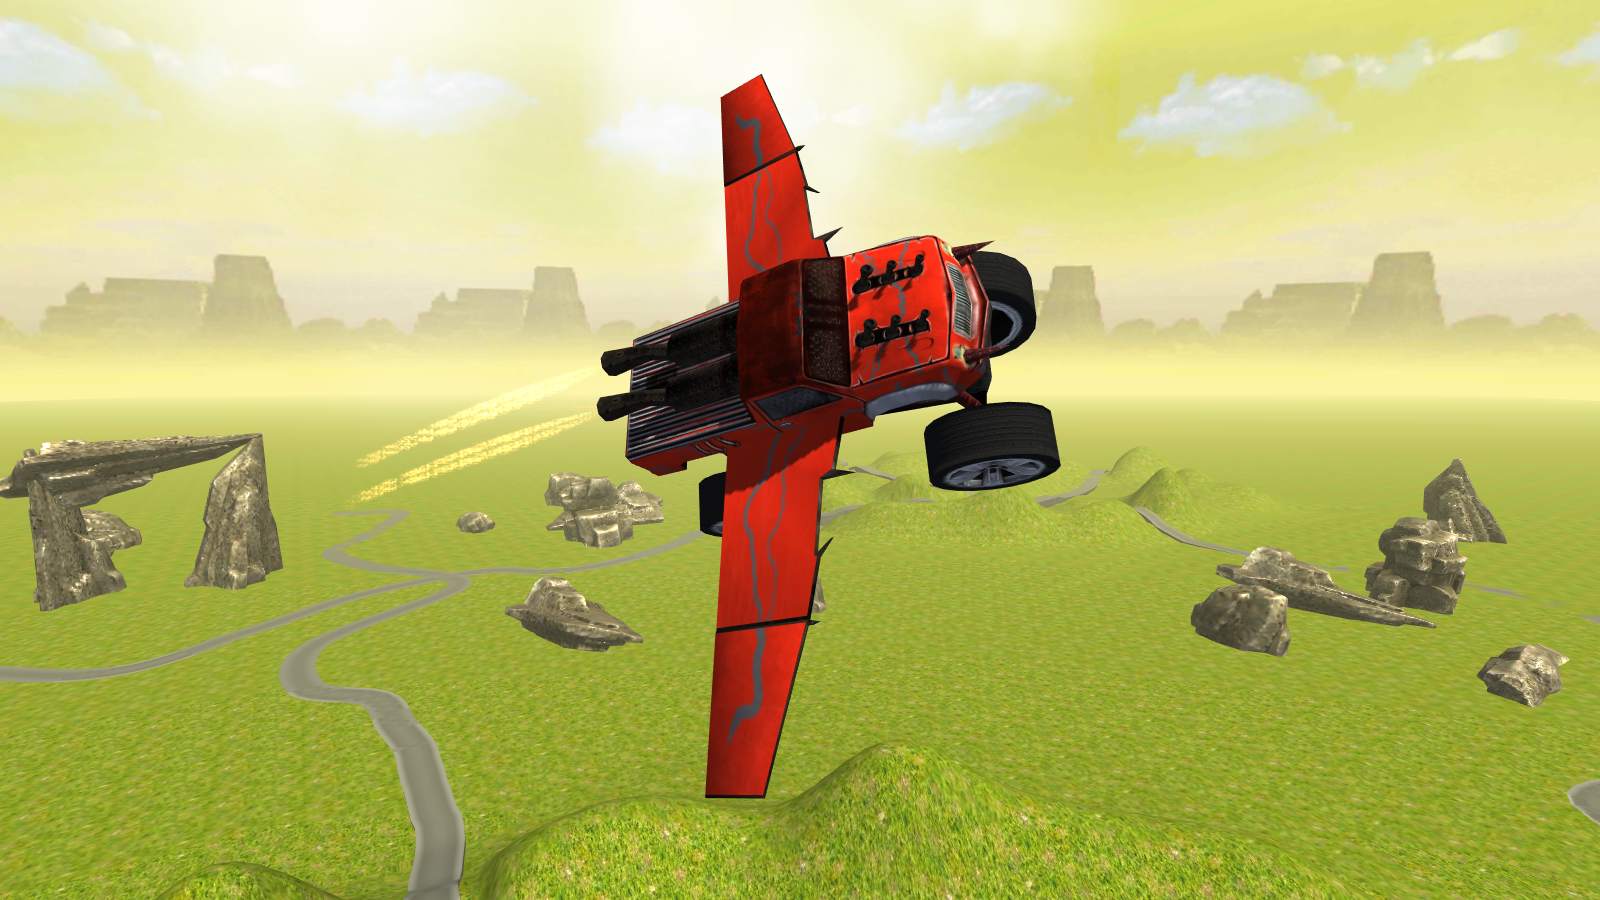 Screenshot 1 of Fliegender Monstertruck-Simulator 1